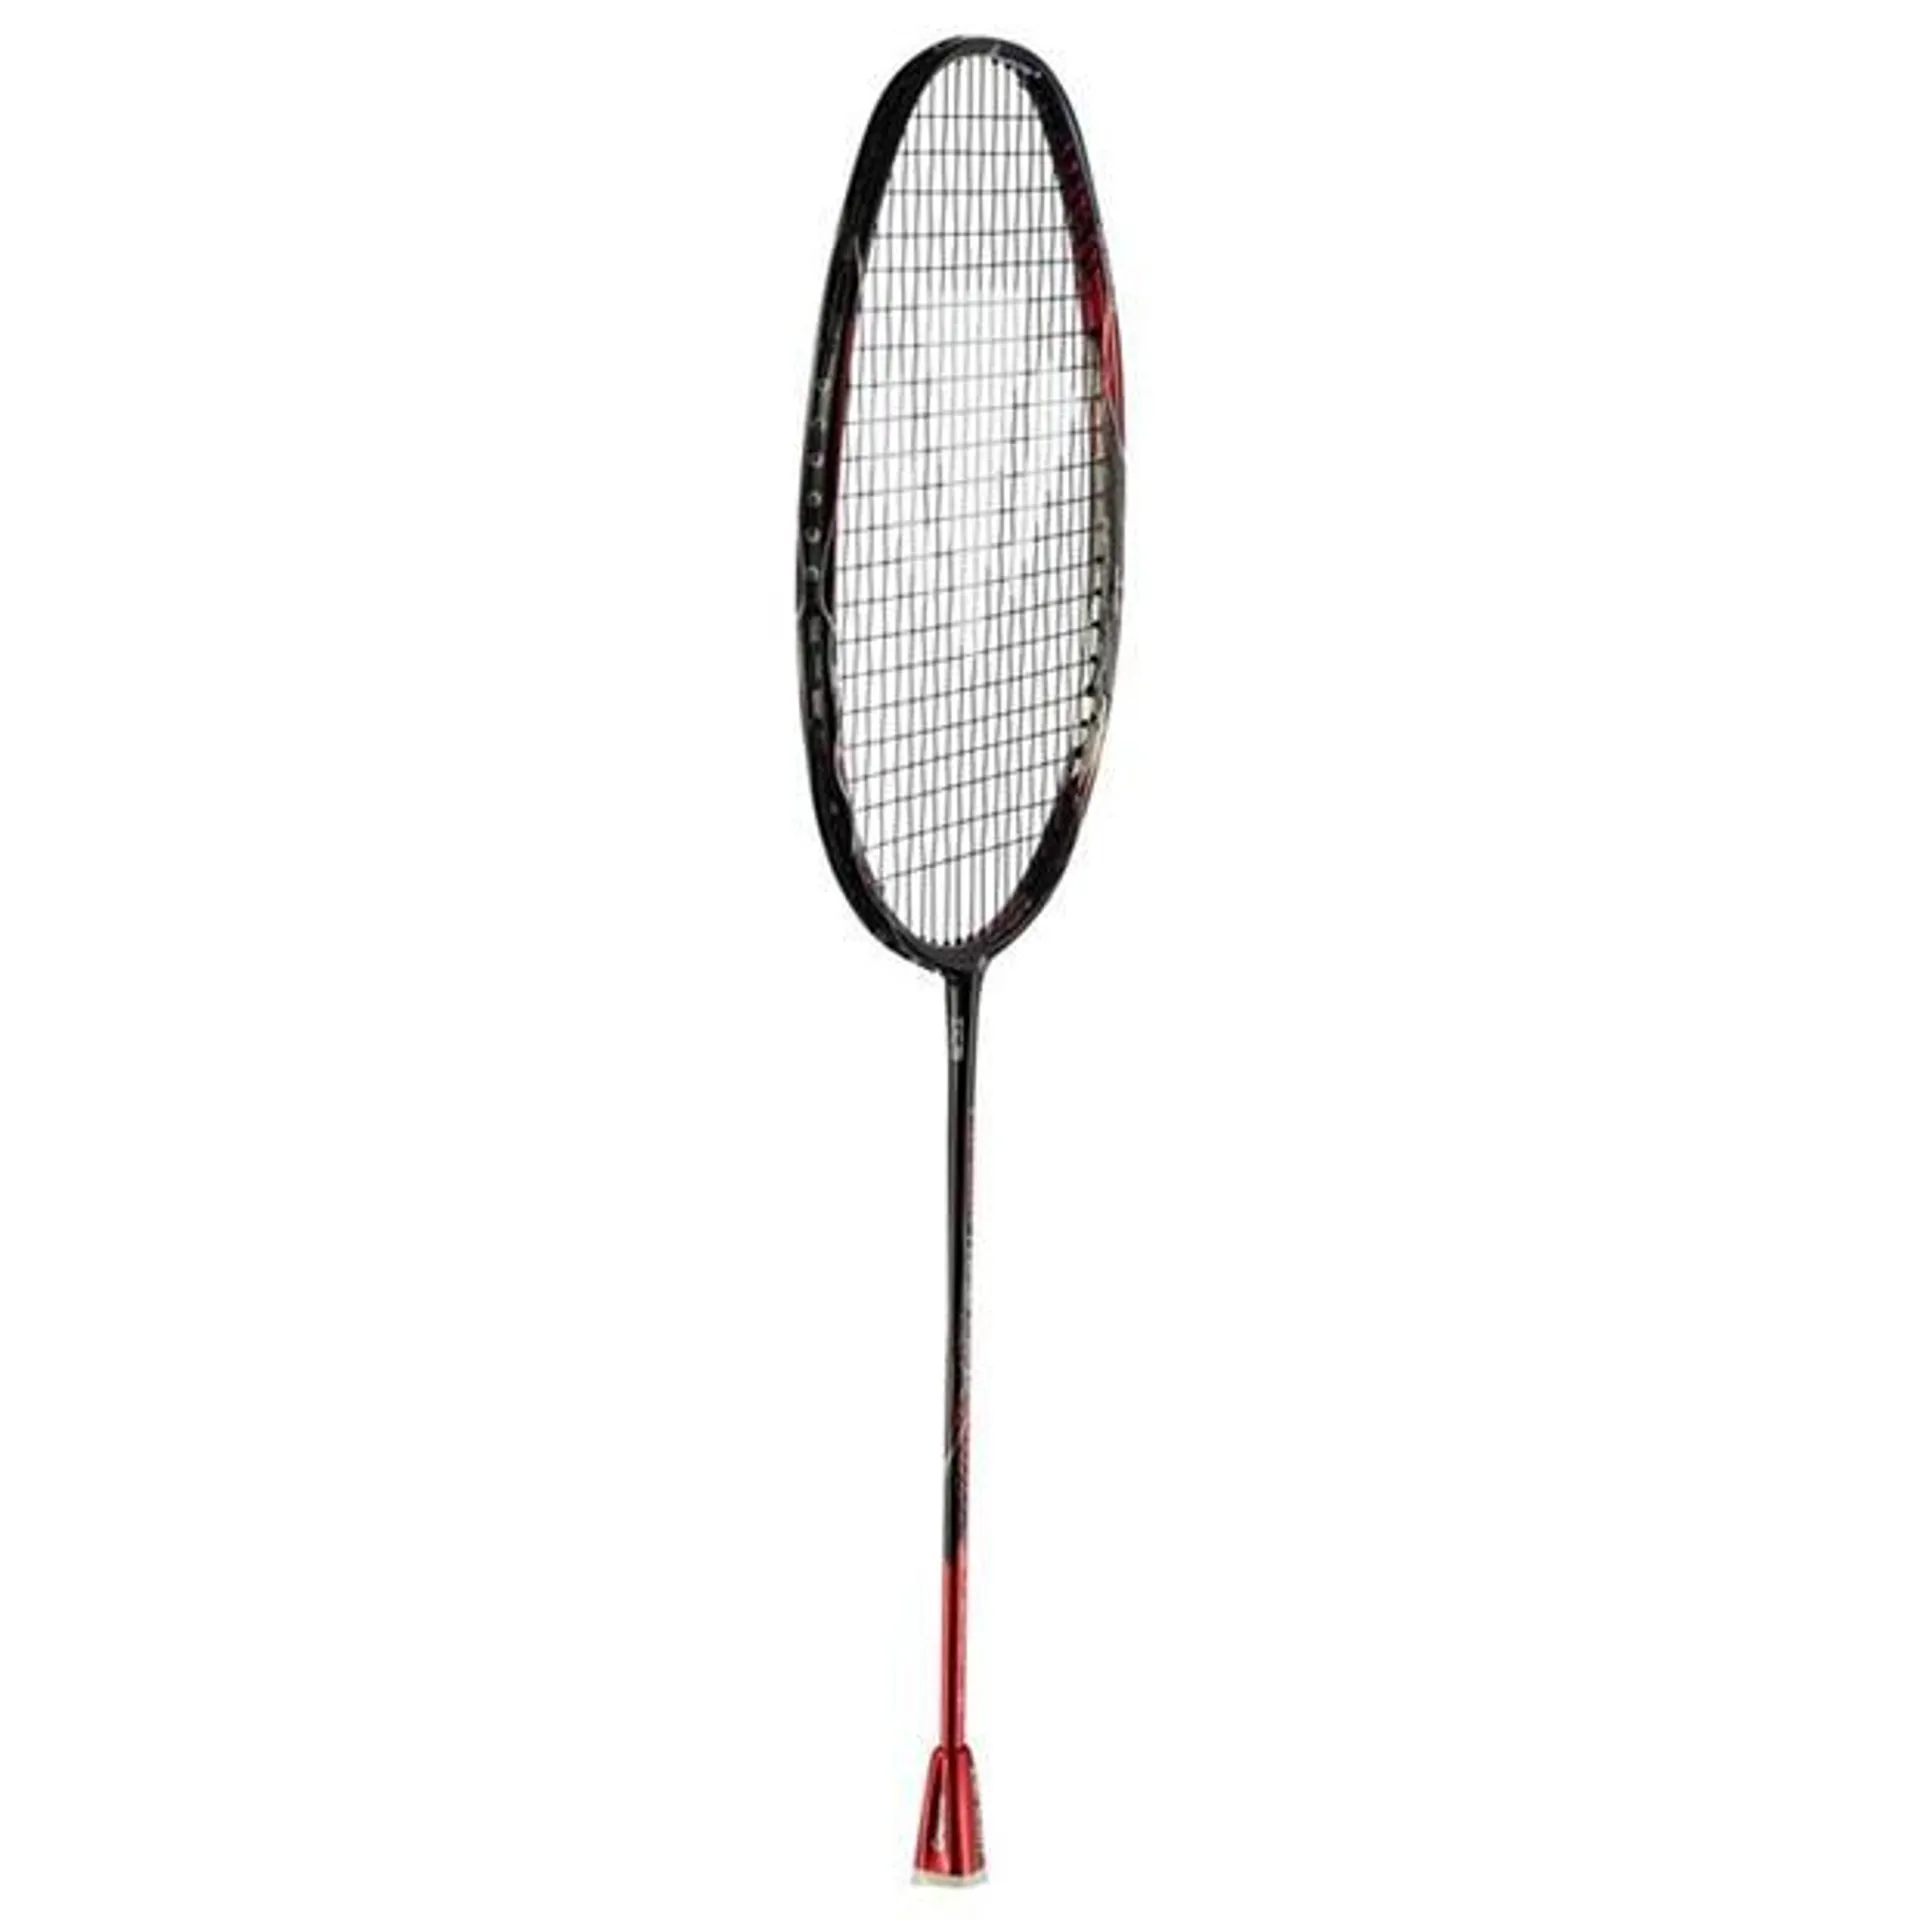 Vapour Trail Pure Badminton Racket